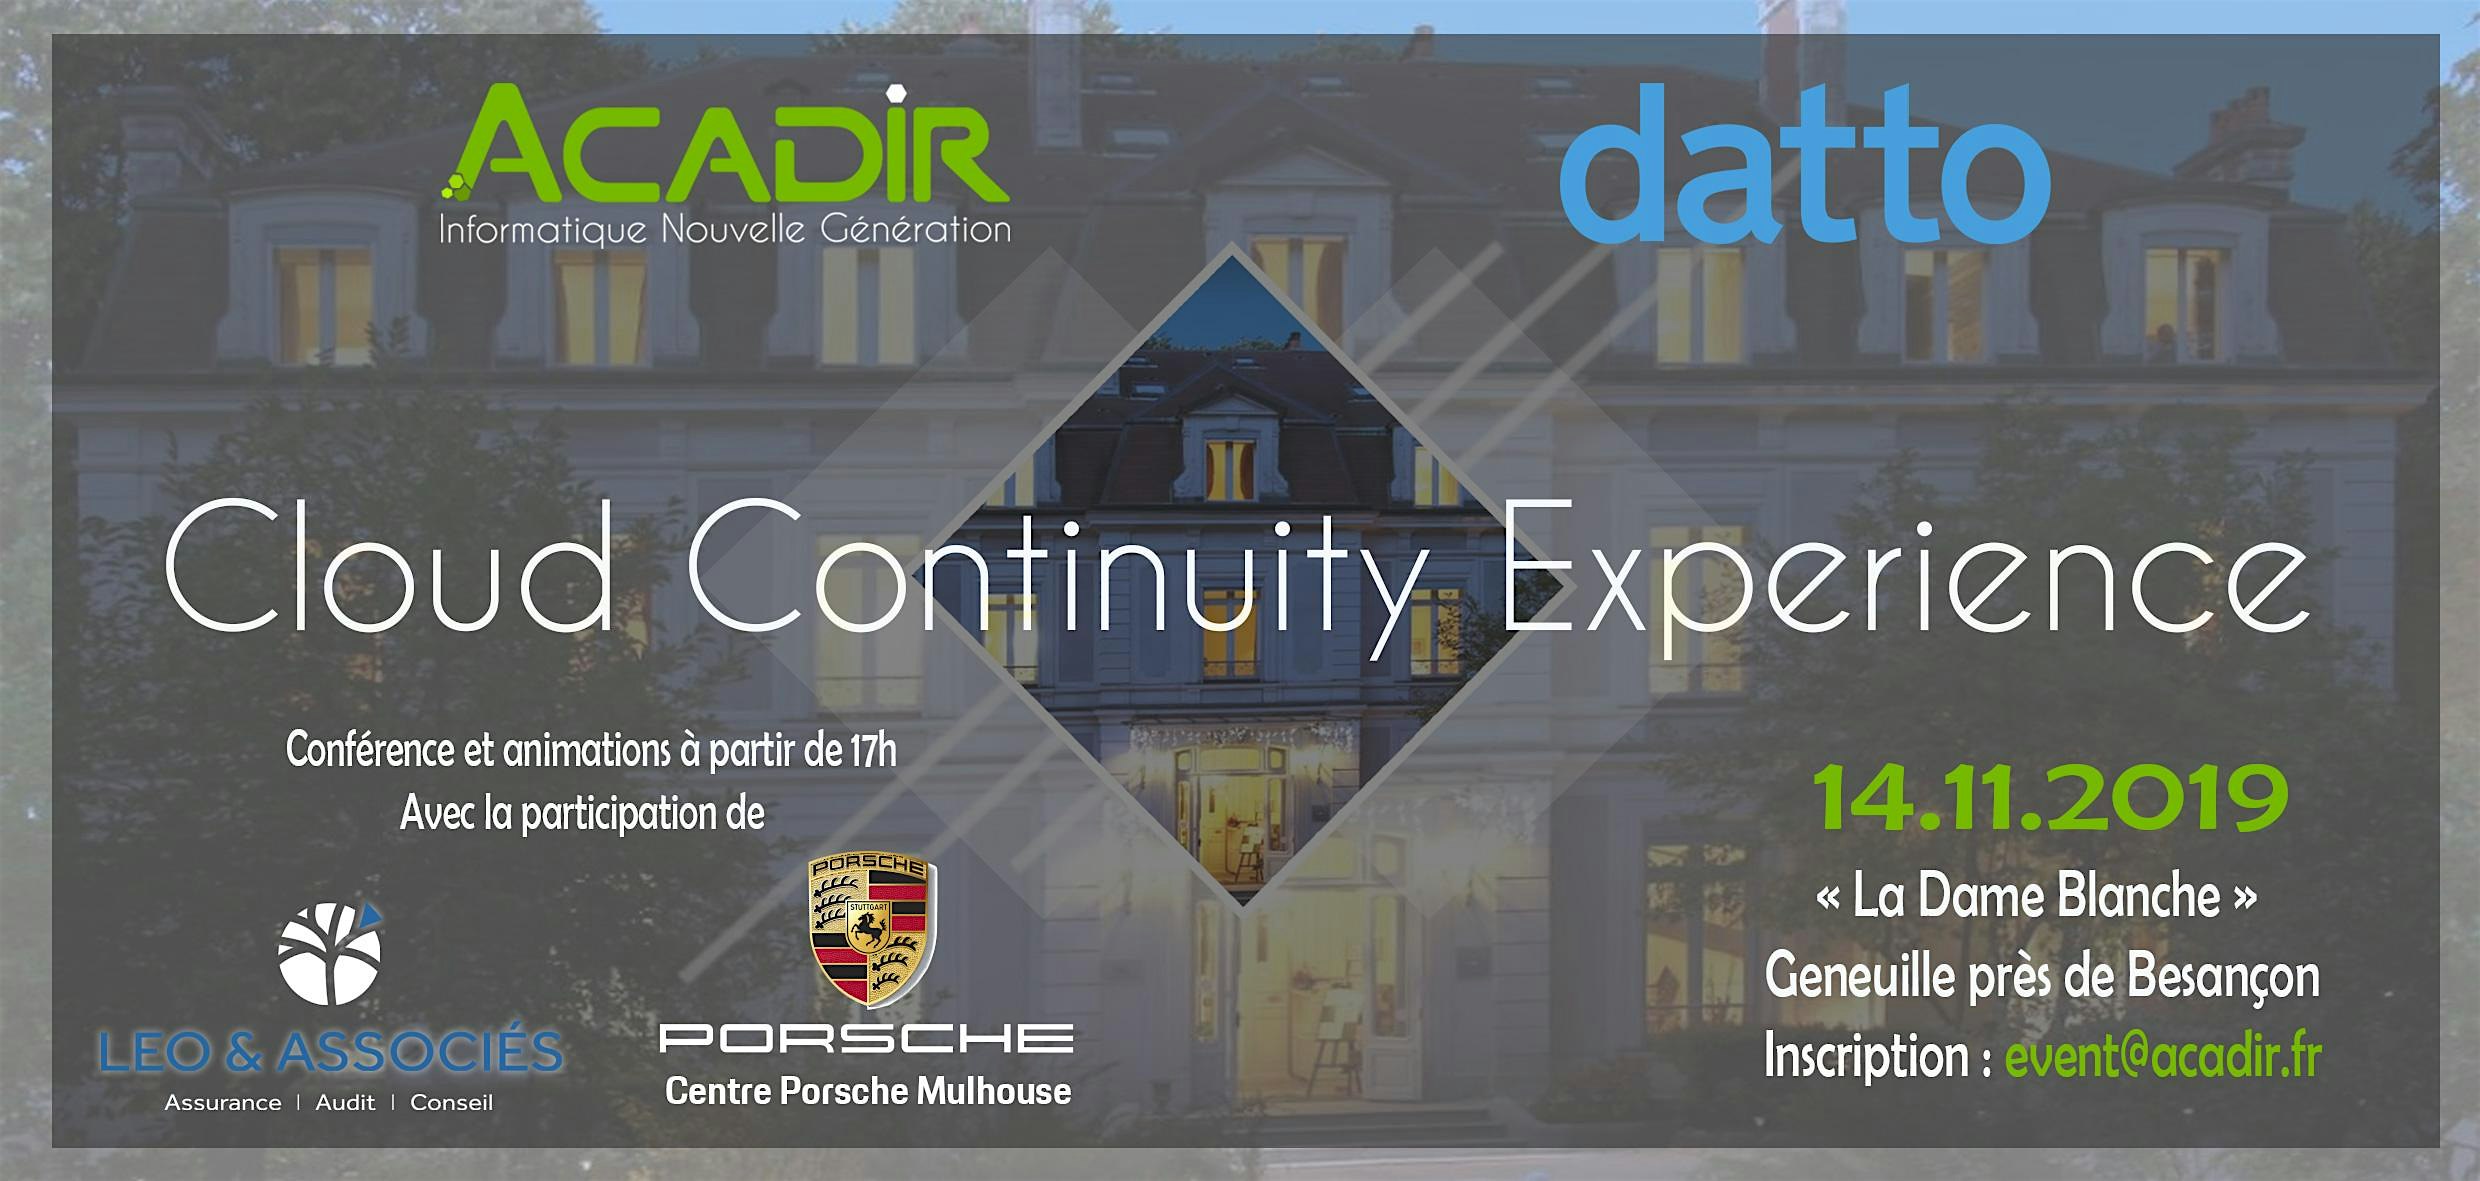 ACADIR Cloud Continuity Experience - Assurez la pérennité et développez votre entreprise grâce aux solutions Cloud Nouvelle Génération